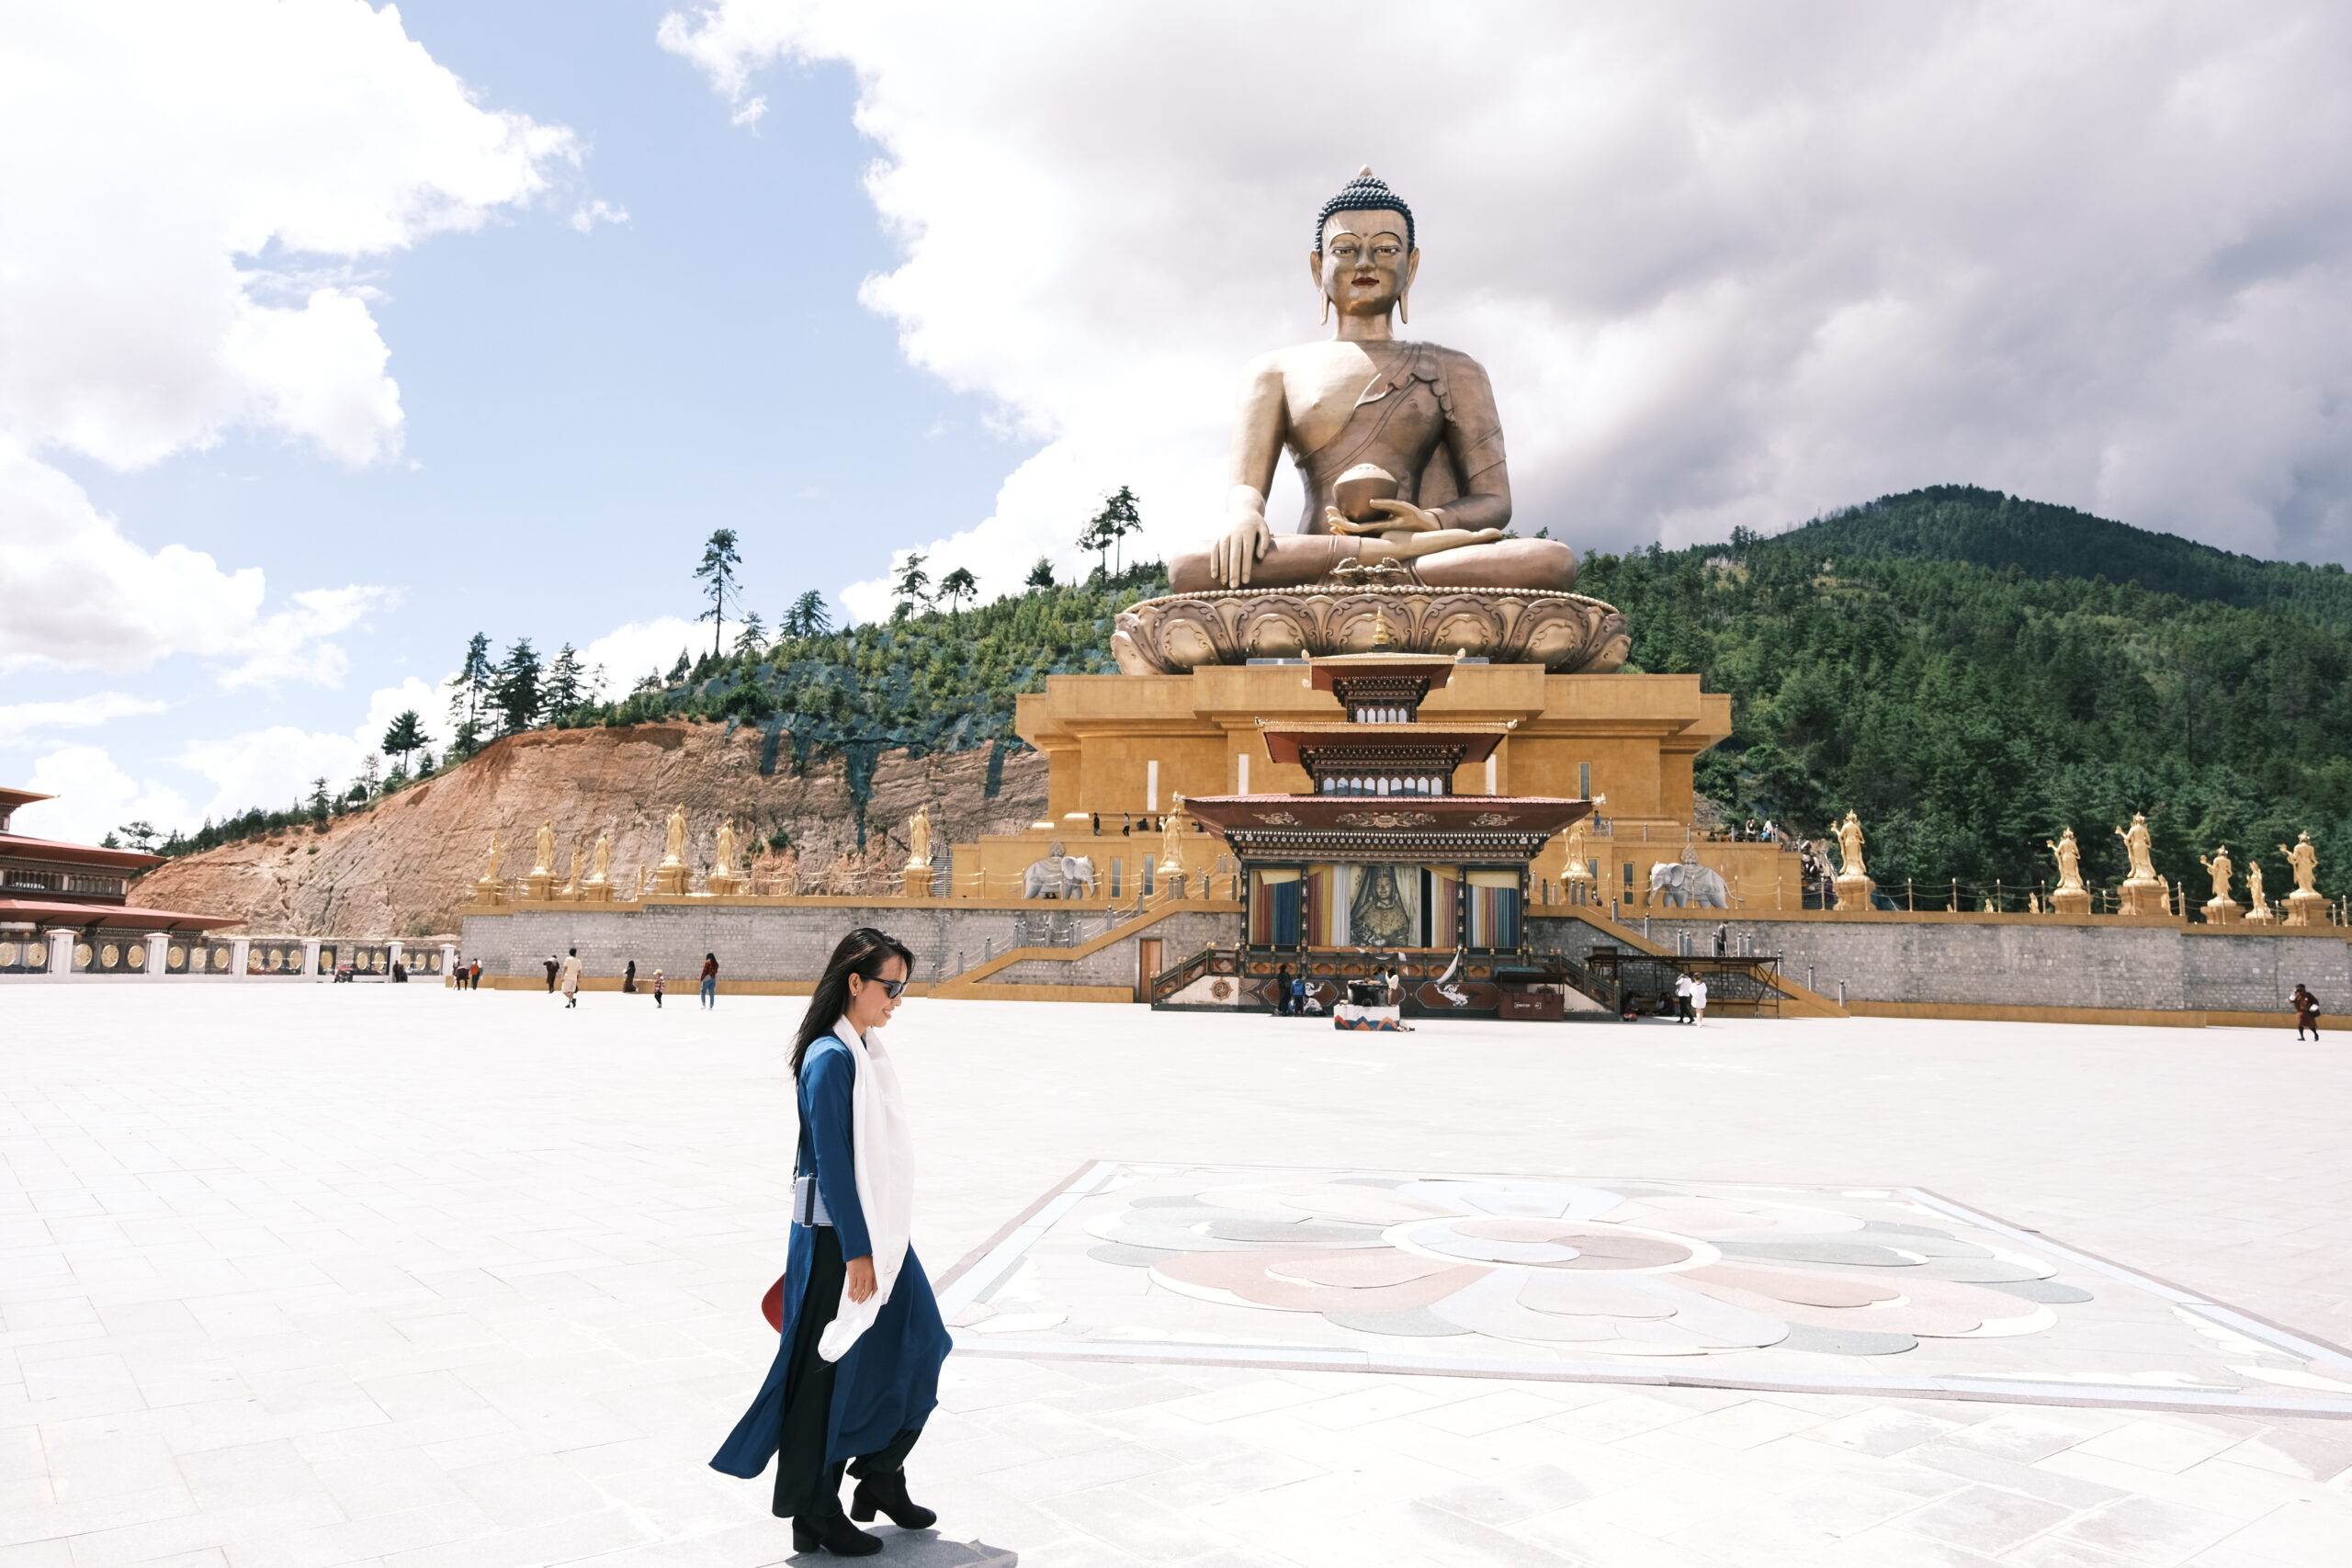 Bay thẳng đặc biệt Việt Nam Bhutan – Lịch trình 1